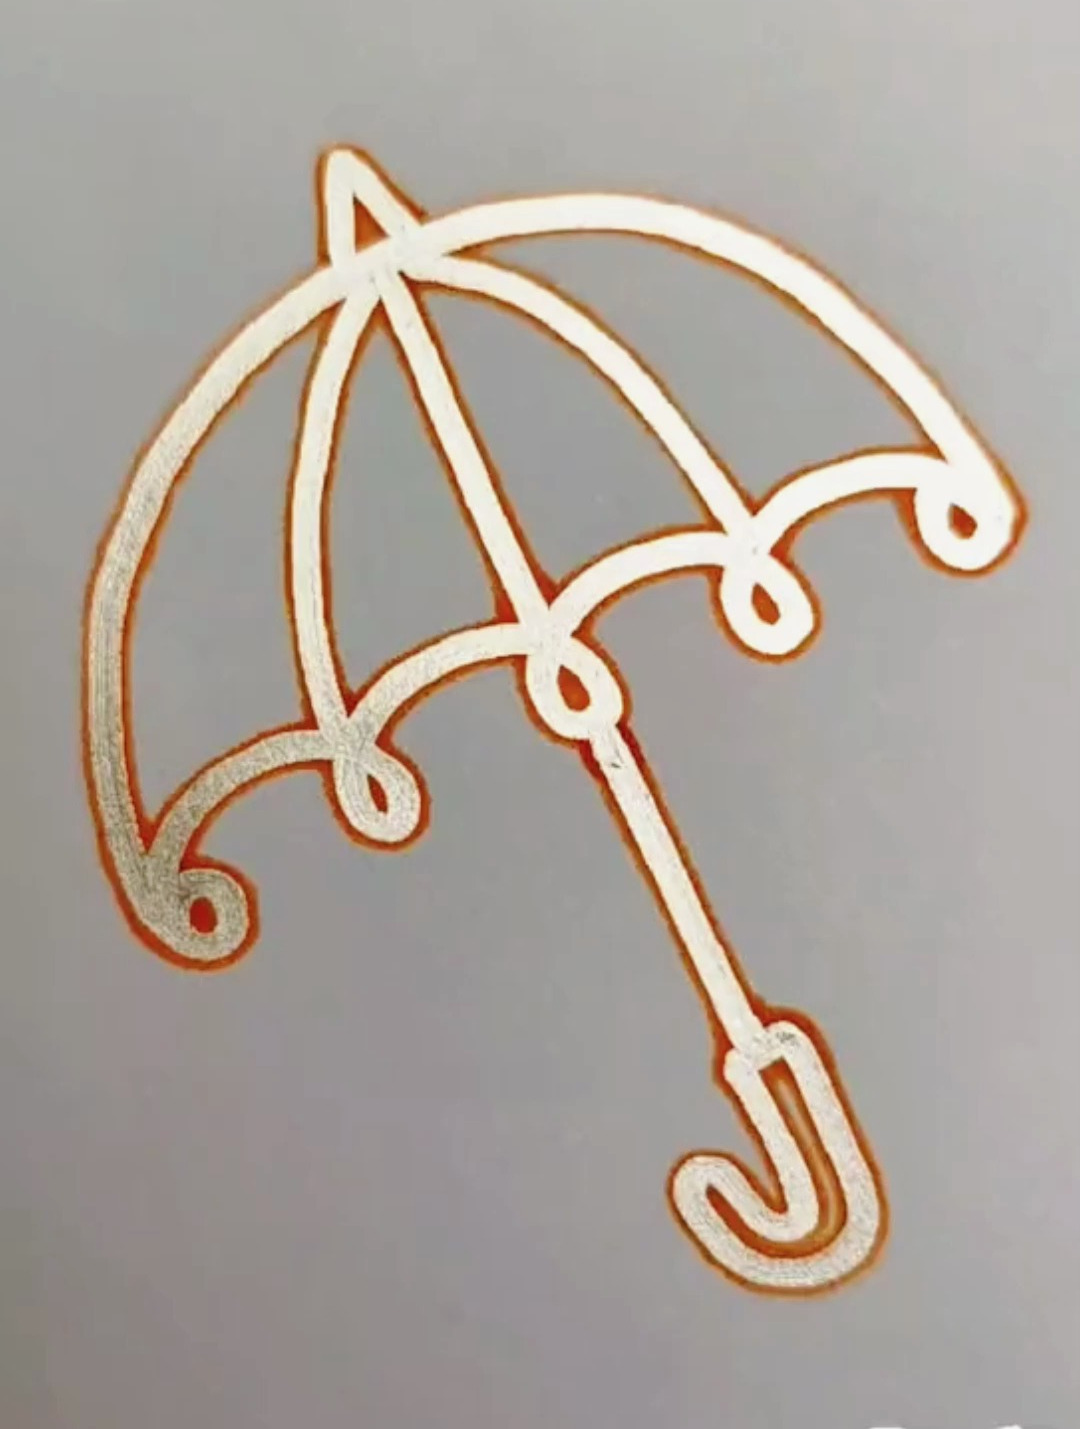 用一条螺旋线画遮阳伞,是不是很简单